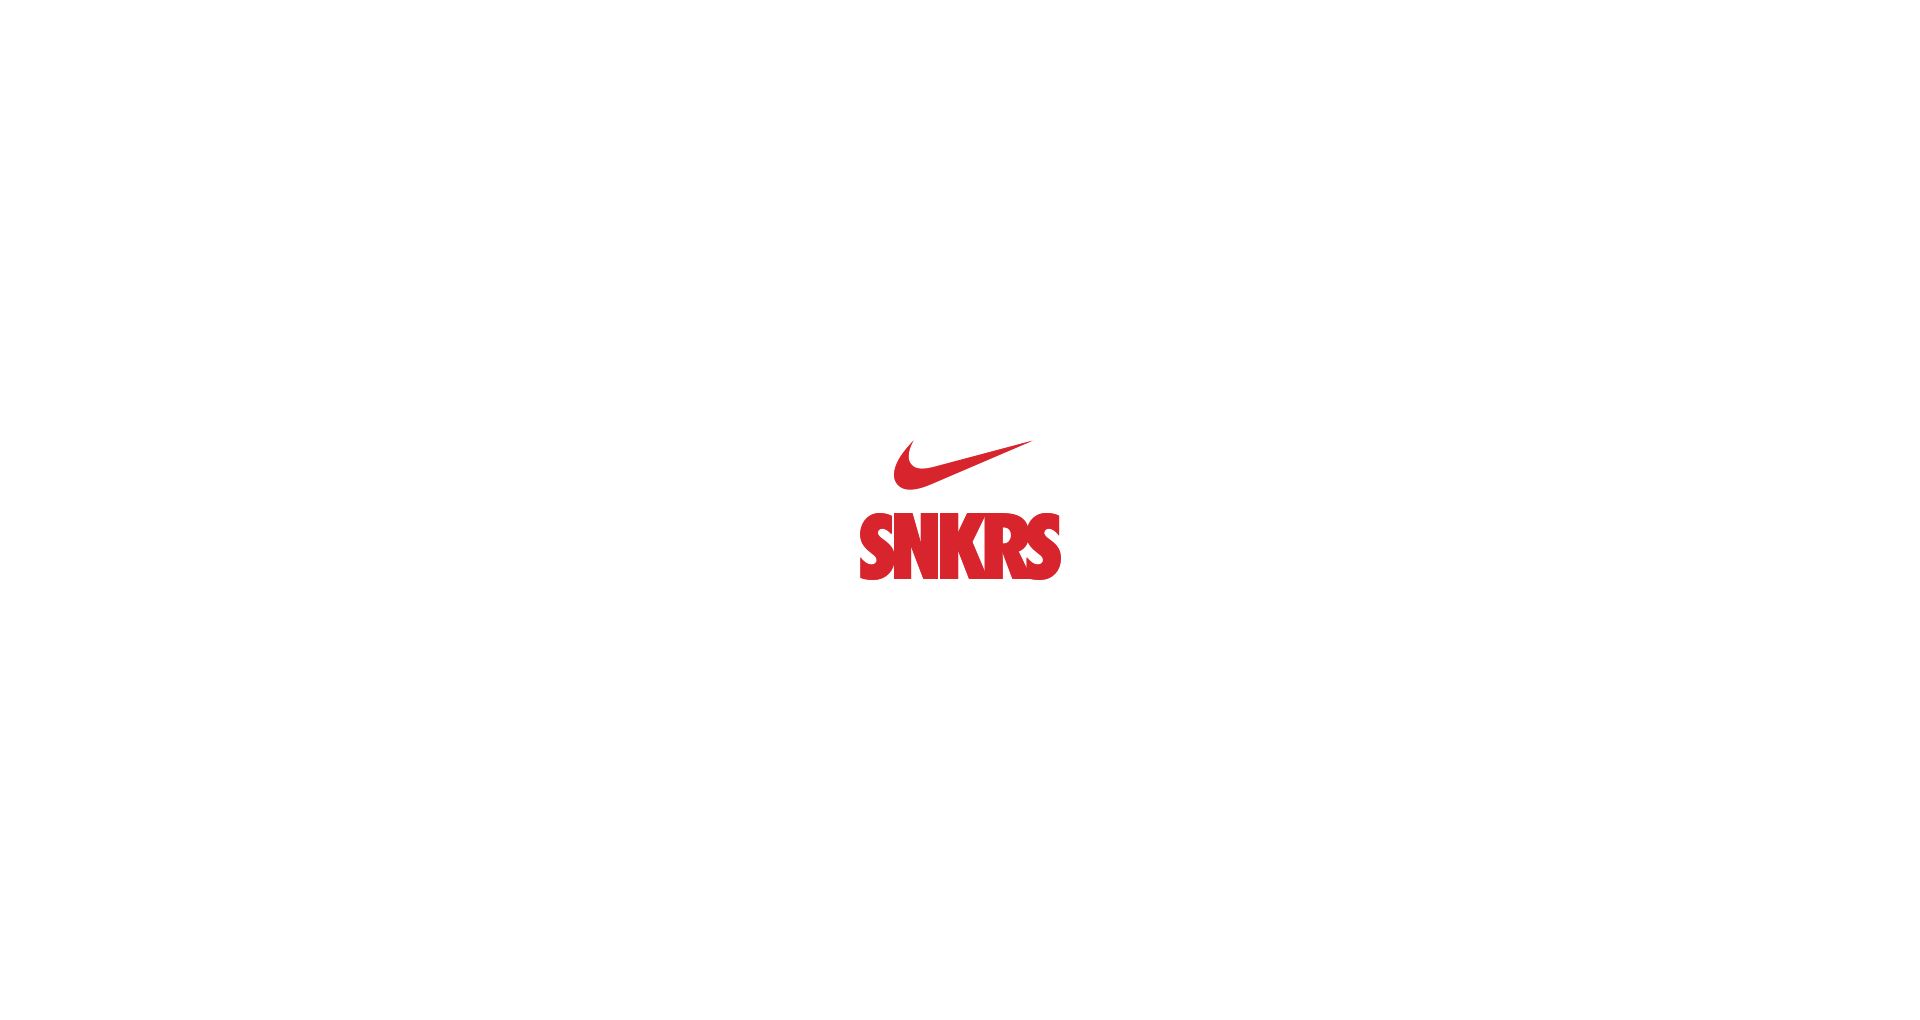 エア フォース 1 'Shibuya Halloween' 発売日. Nike SNKRS JP